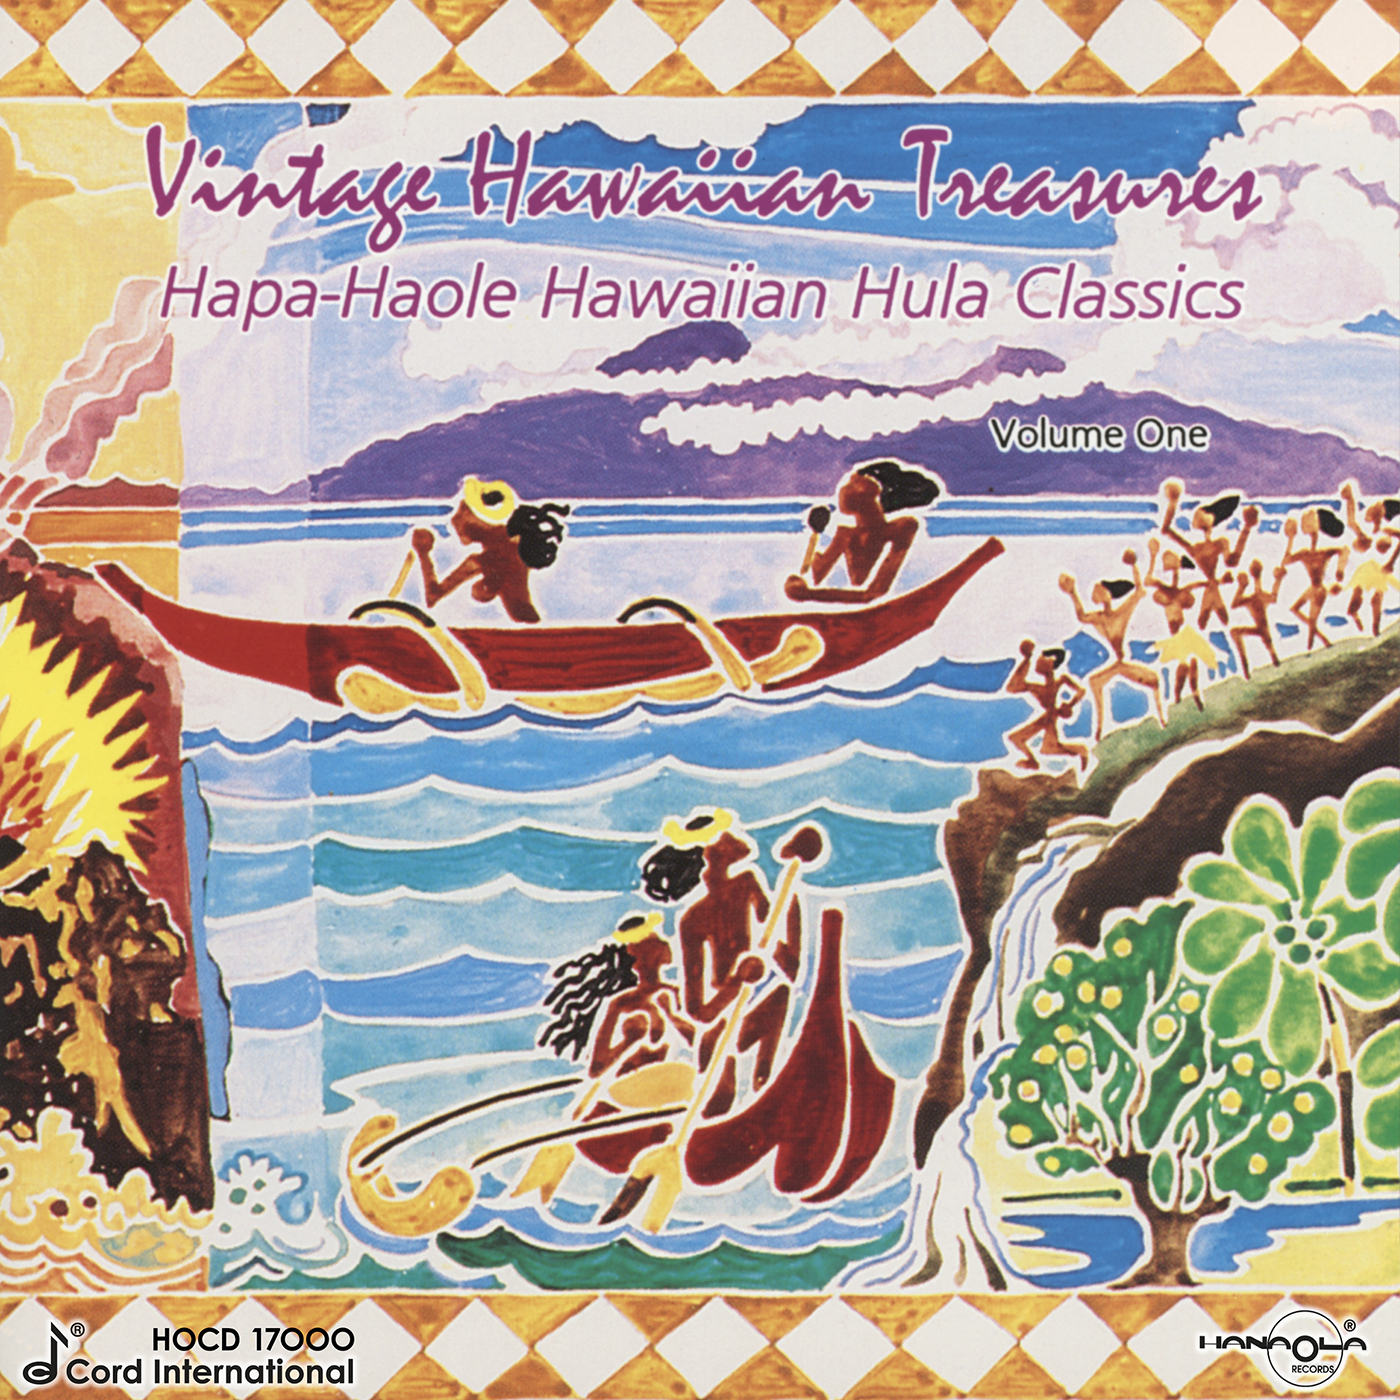 Hapa-Haole Hawaiian